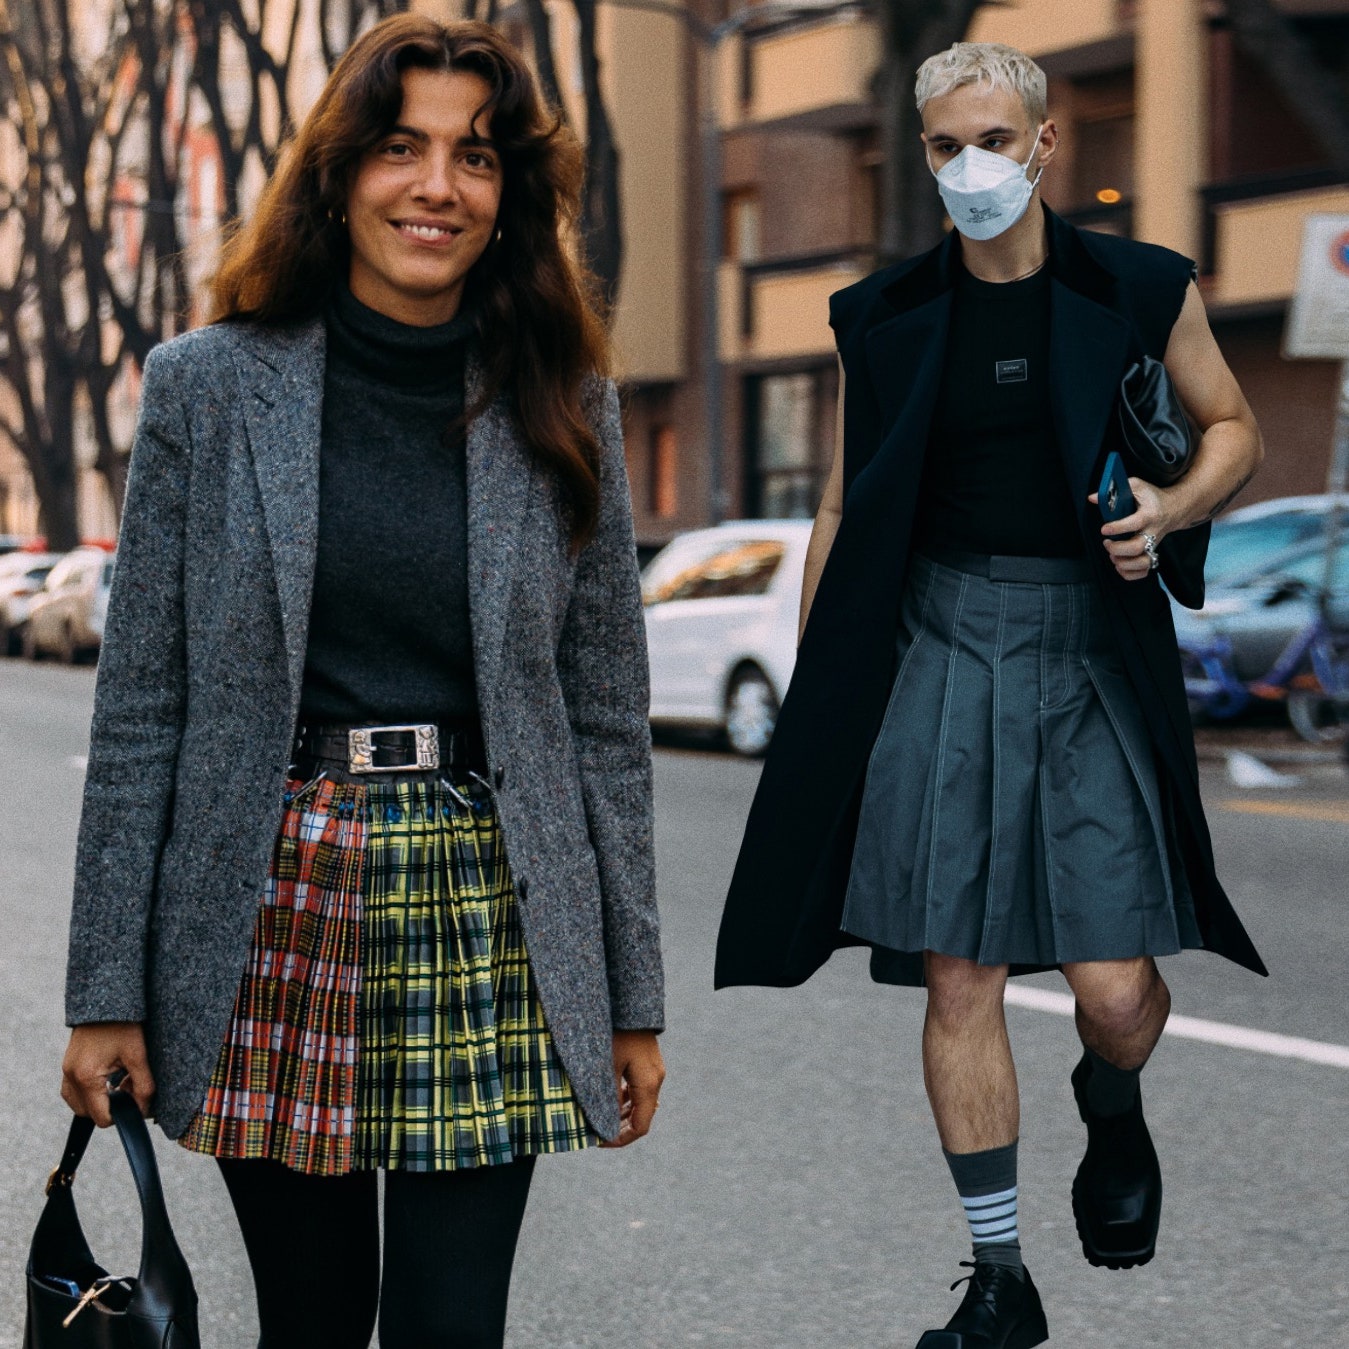 Плиссированные юбки &- страсть героев стритстайла. 16 модных вариантов ищите тут